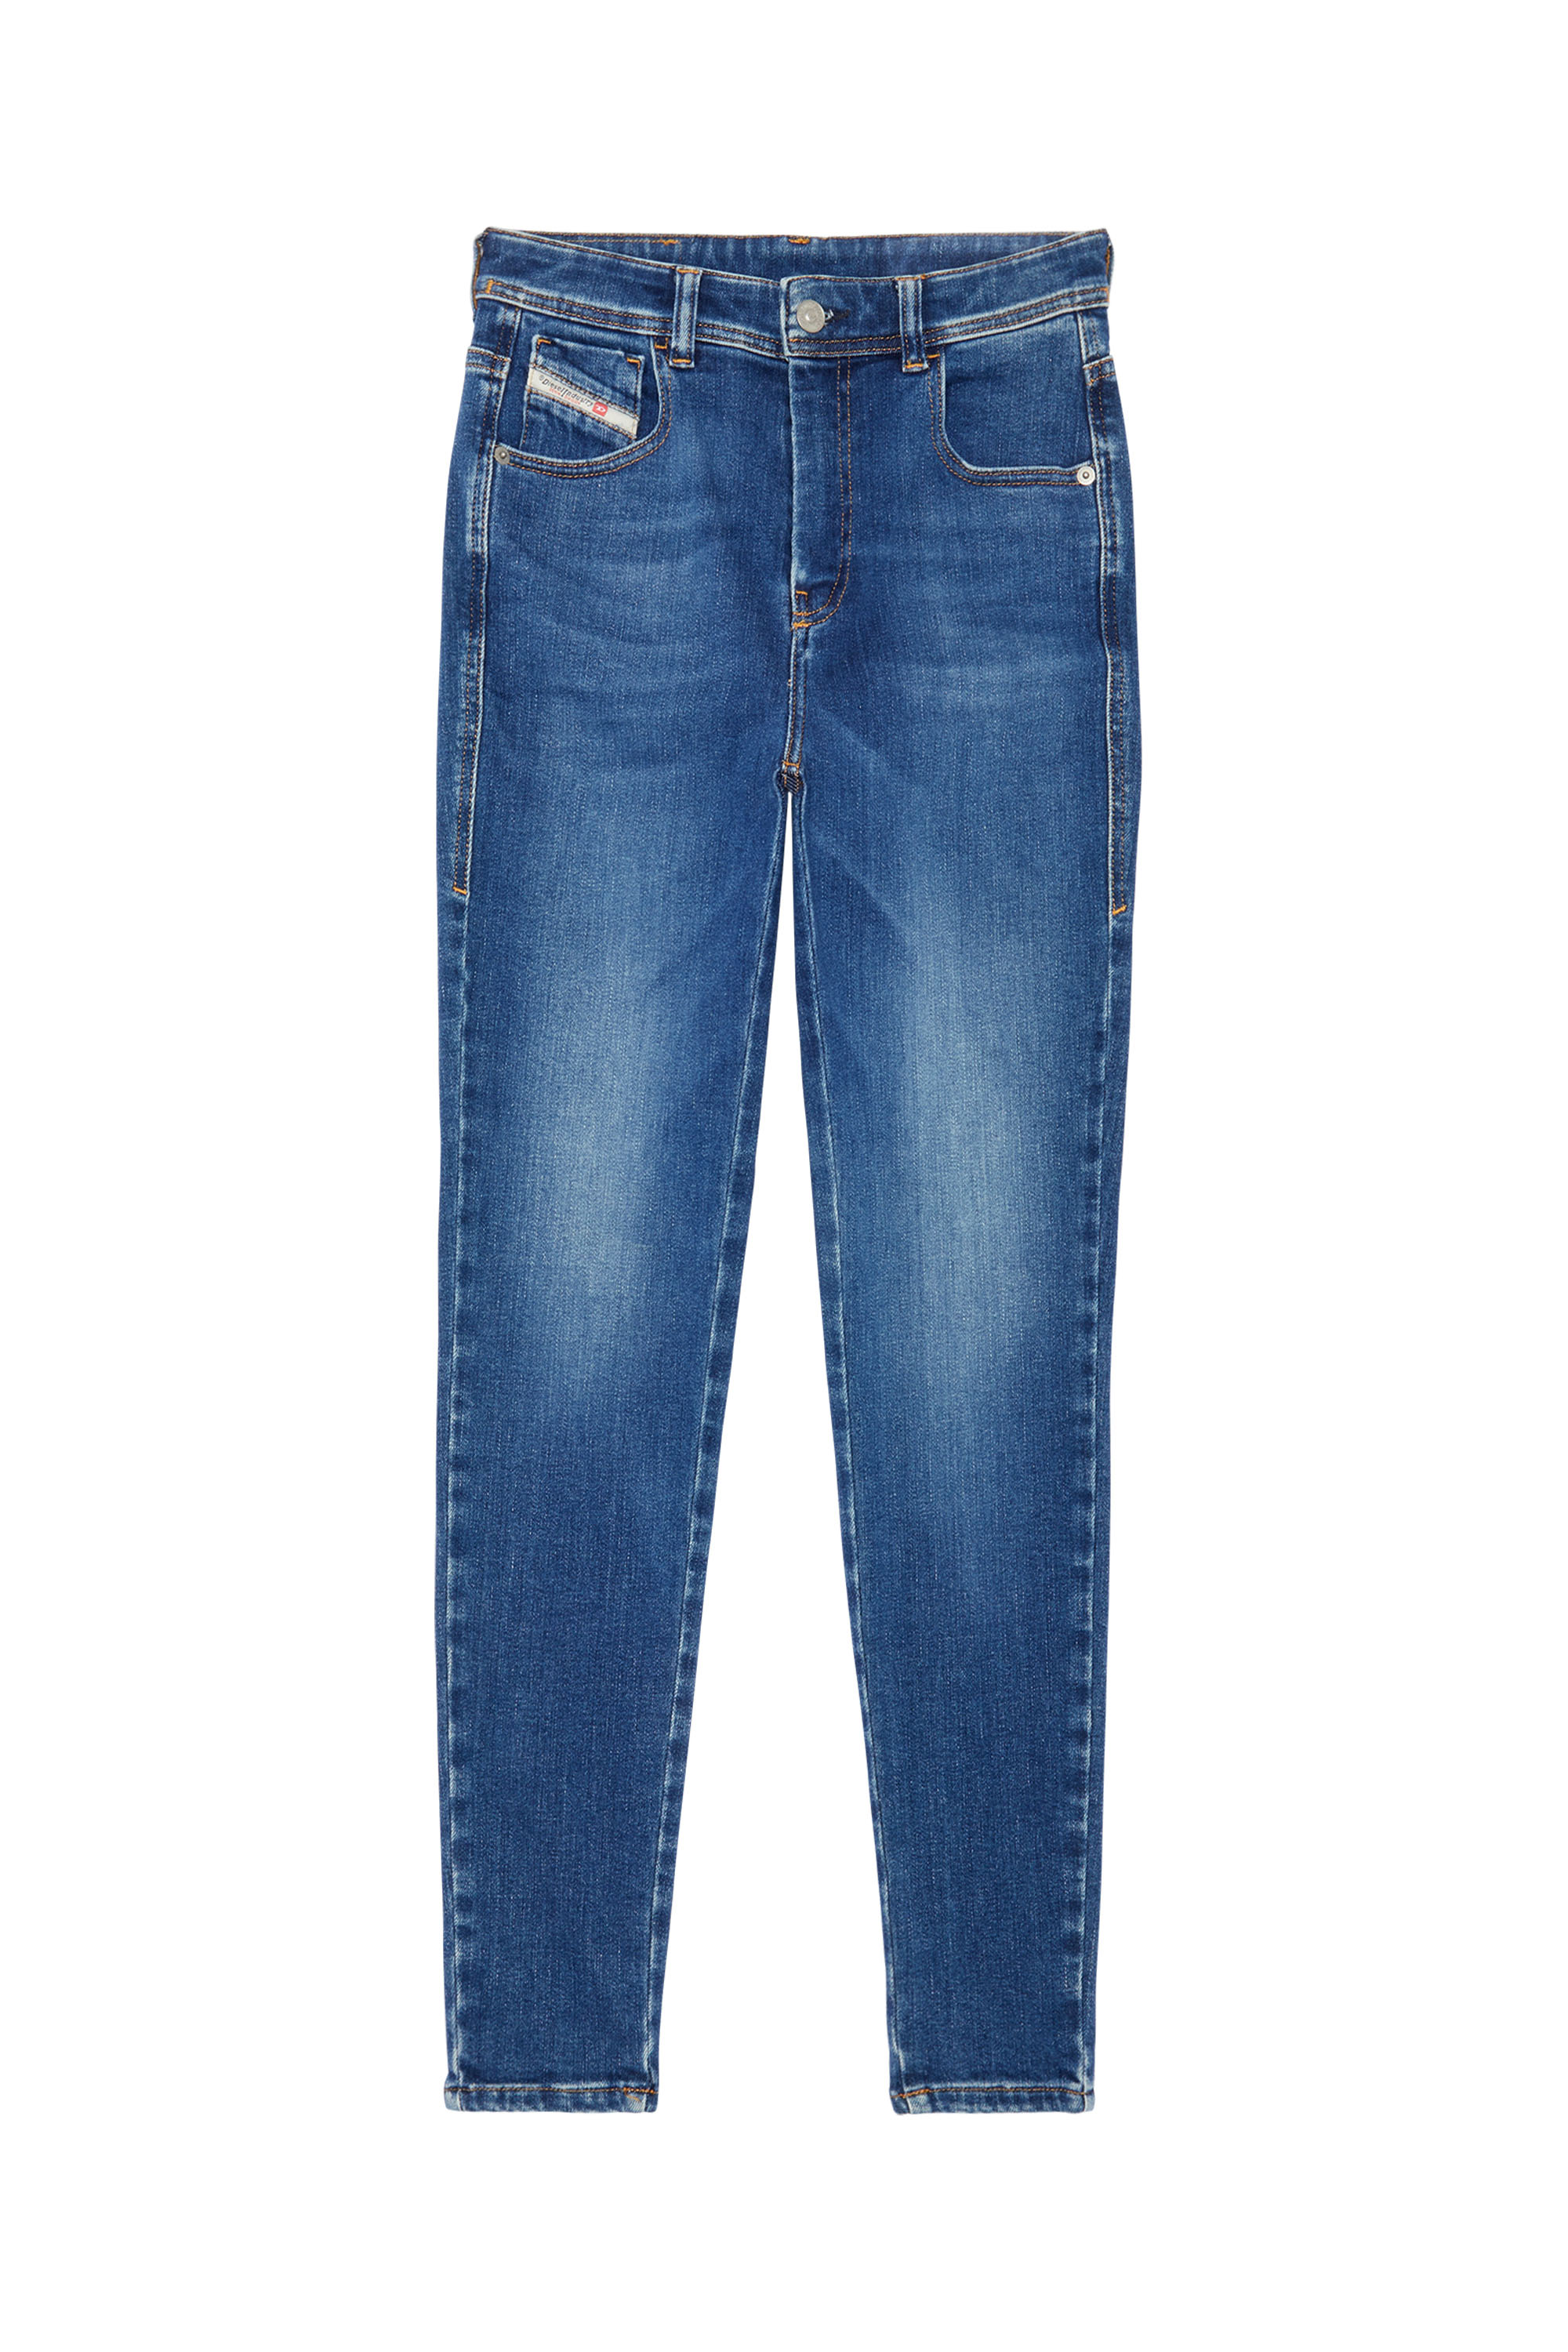 1984 SLANDY-HIGH 09C21 Super skinny Jeans, Azul Oscuro - Vaqueros